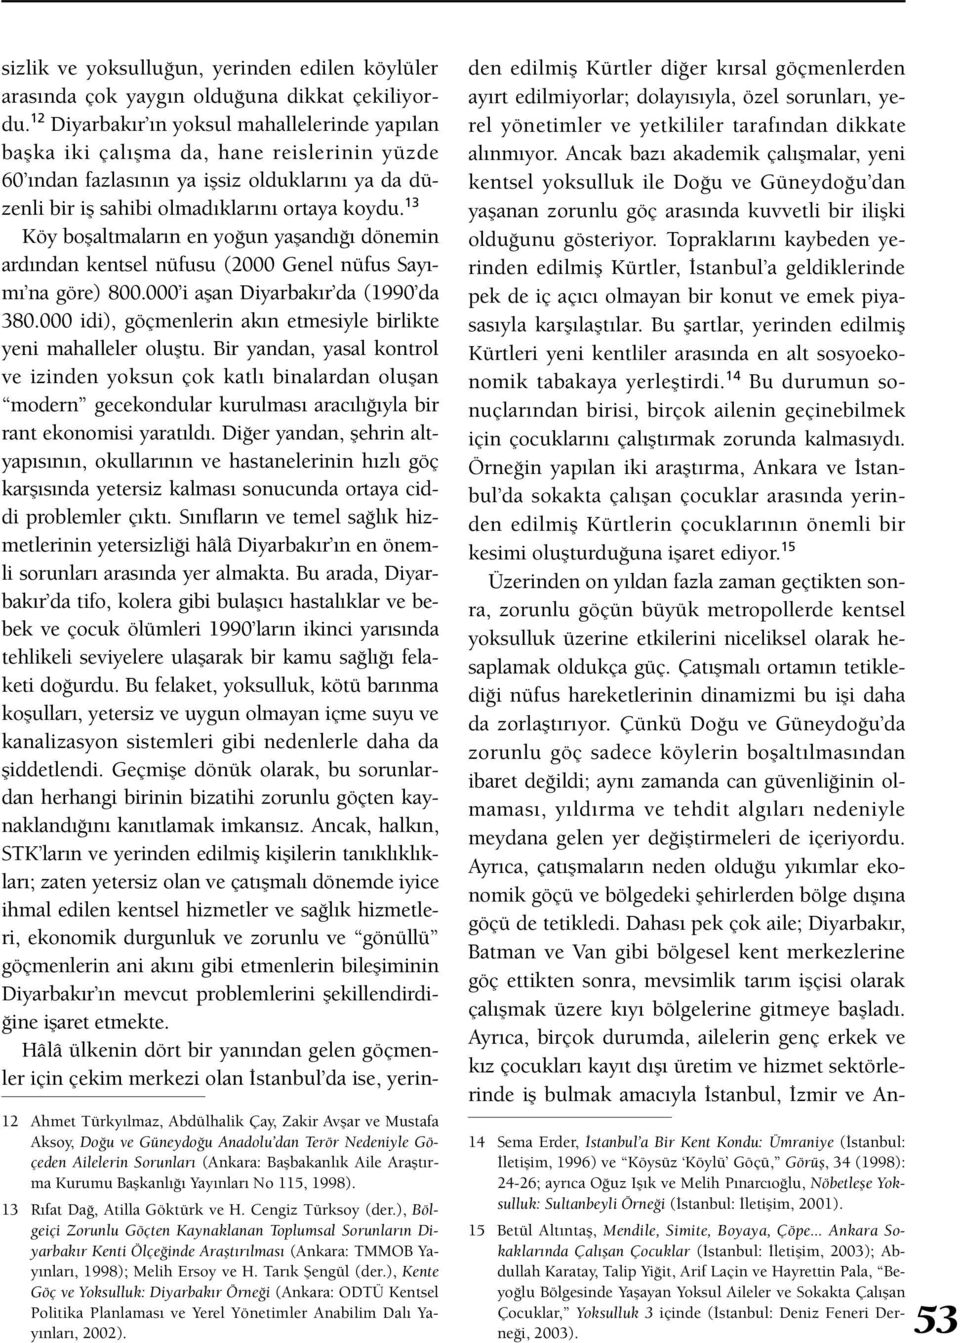 ), Bölgeiçi Zorunlu Göçten Kaynaklanan Toplumsal Sorunların Diyarbakır Kenti Ölçeğinde Araştırılması (Ankara: TMMOB Yayınları, 1998); Melih Ersoy ve H. Tarık Şengül (der.